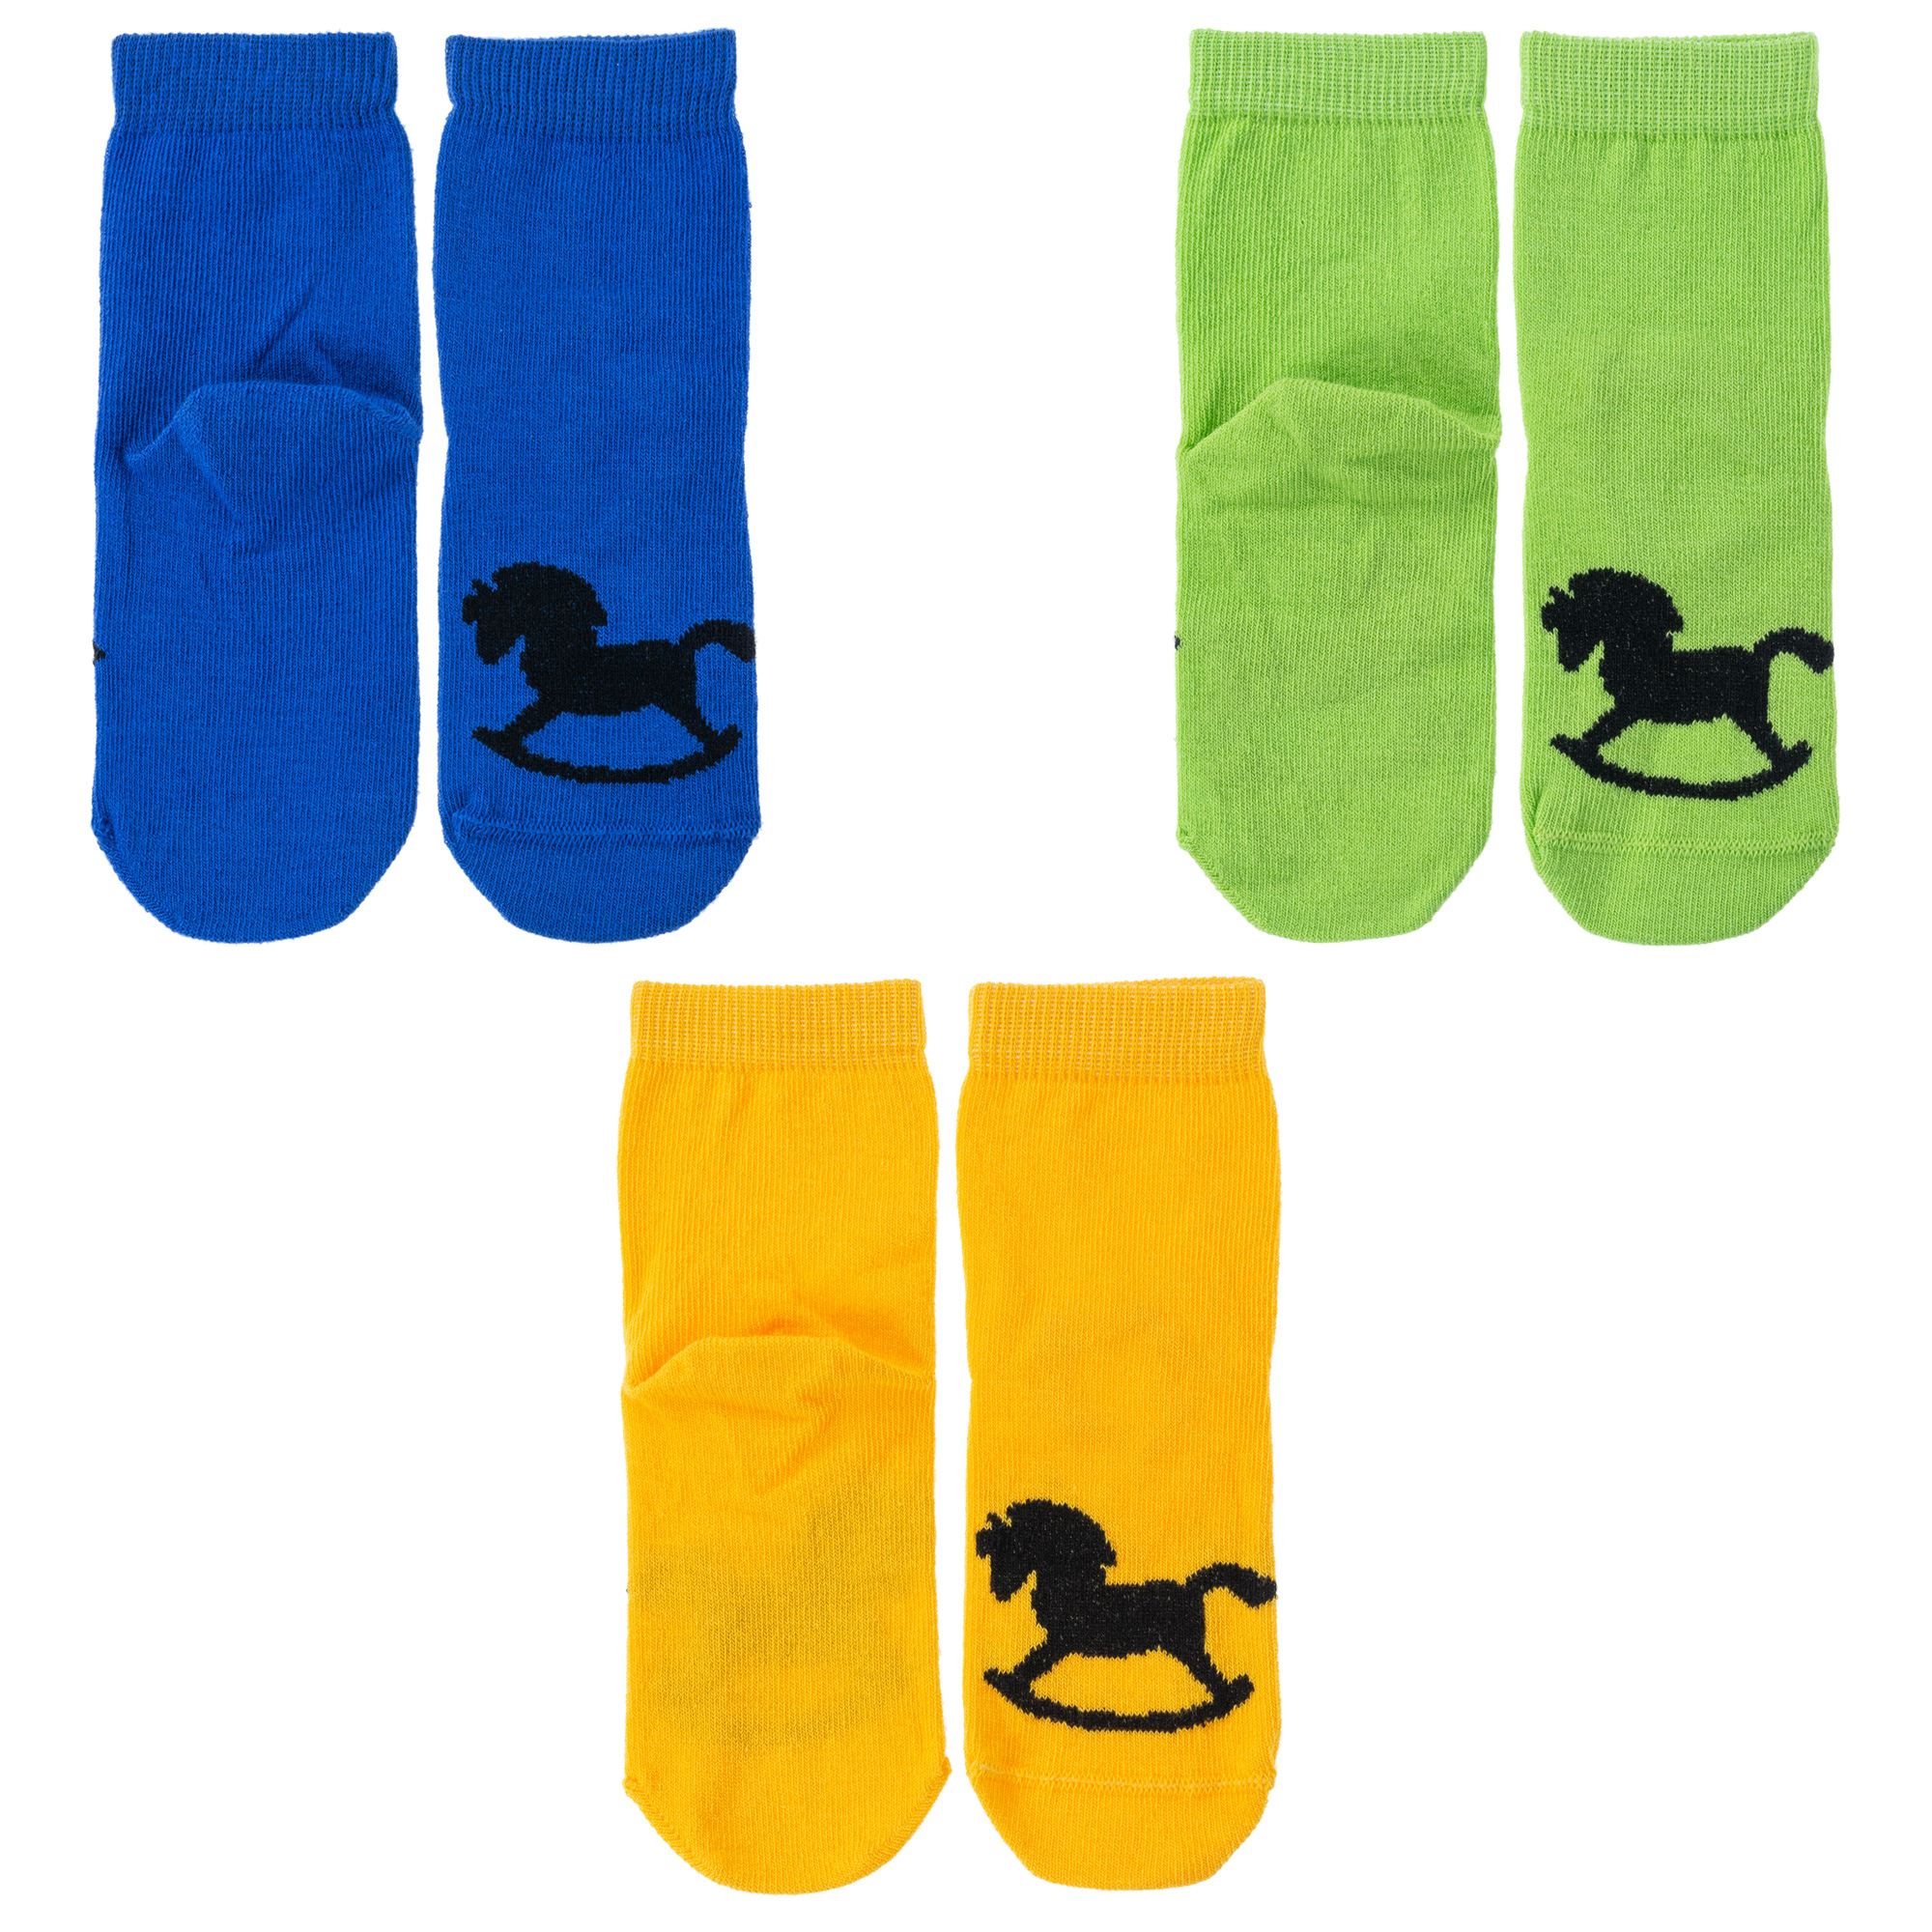 Носки детские Носкофф 3-НД1, синий; зеленый; желтый, 12-14